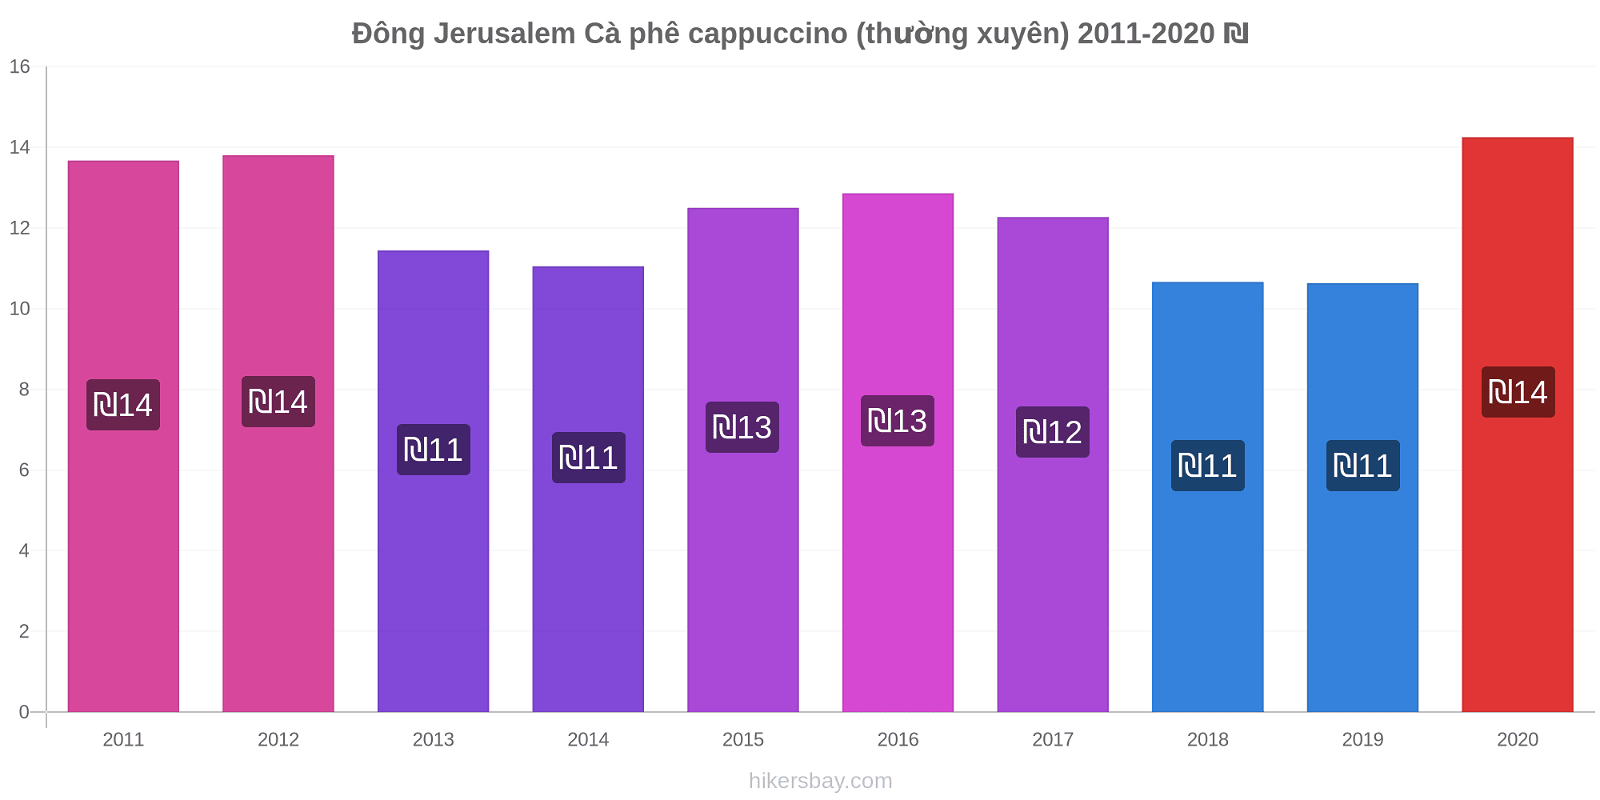 Đông Jerusalem thay đổi giá Cà phê cappuccino (thường xuyên) hikersbay.com